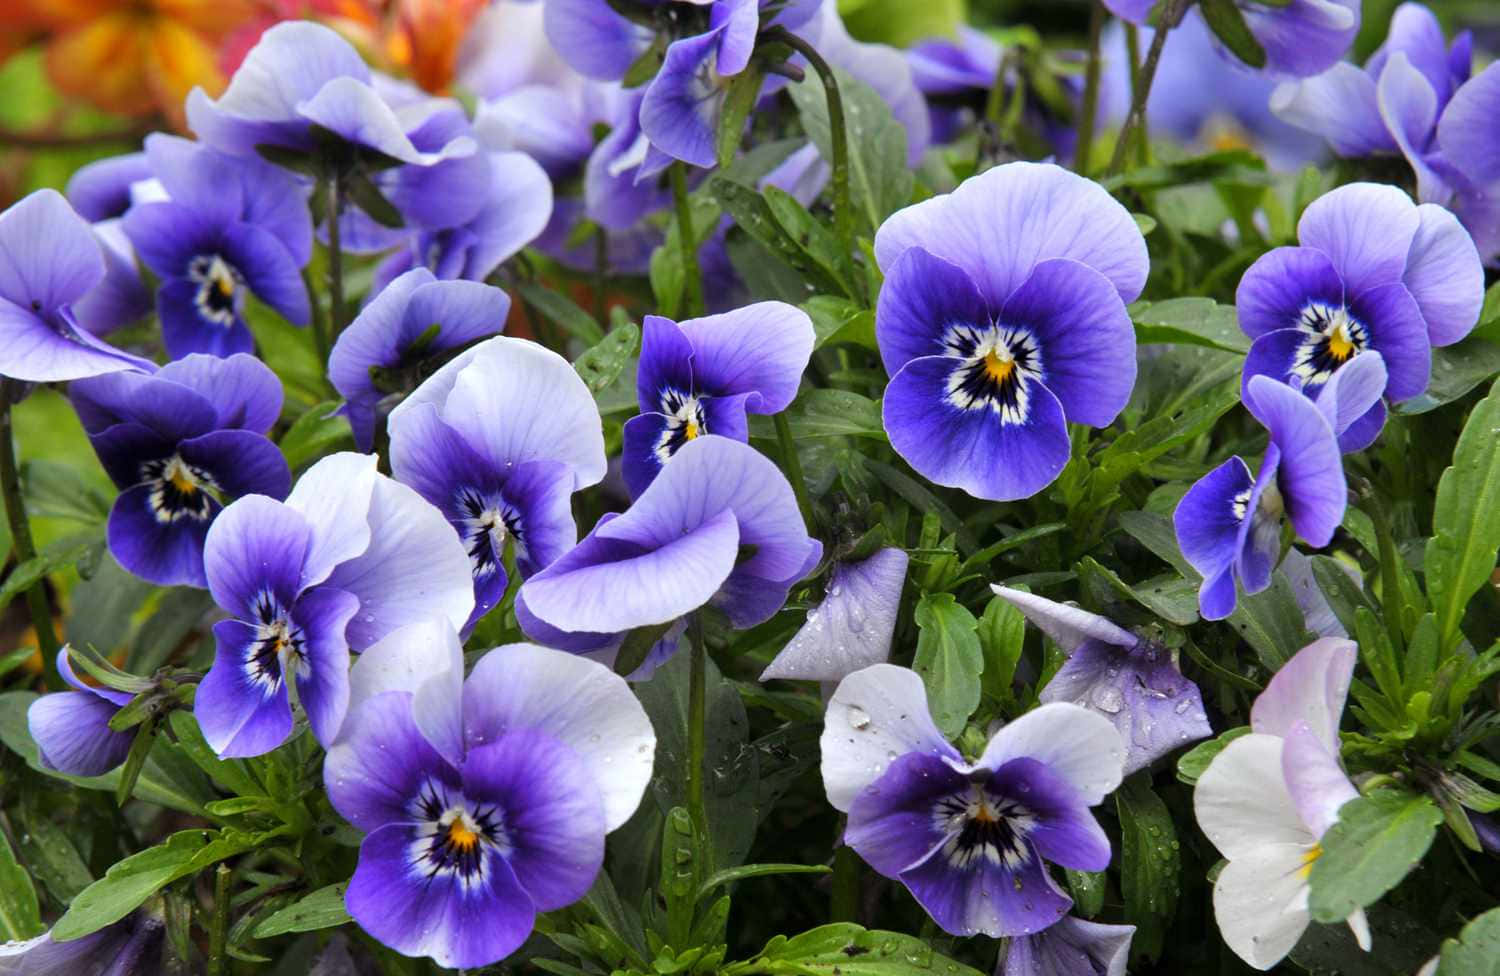 A beautiful Purple Flower